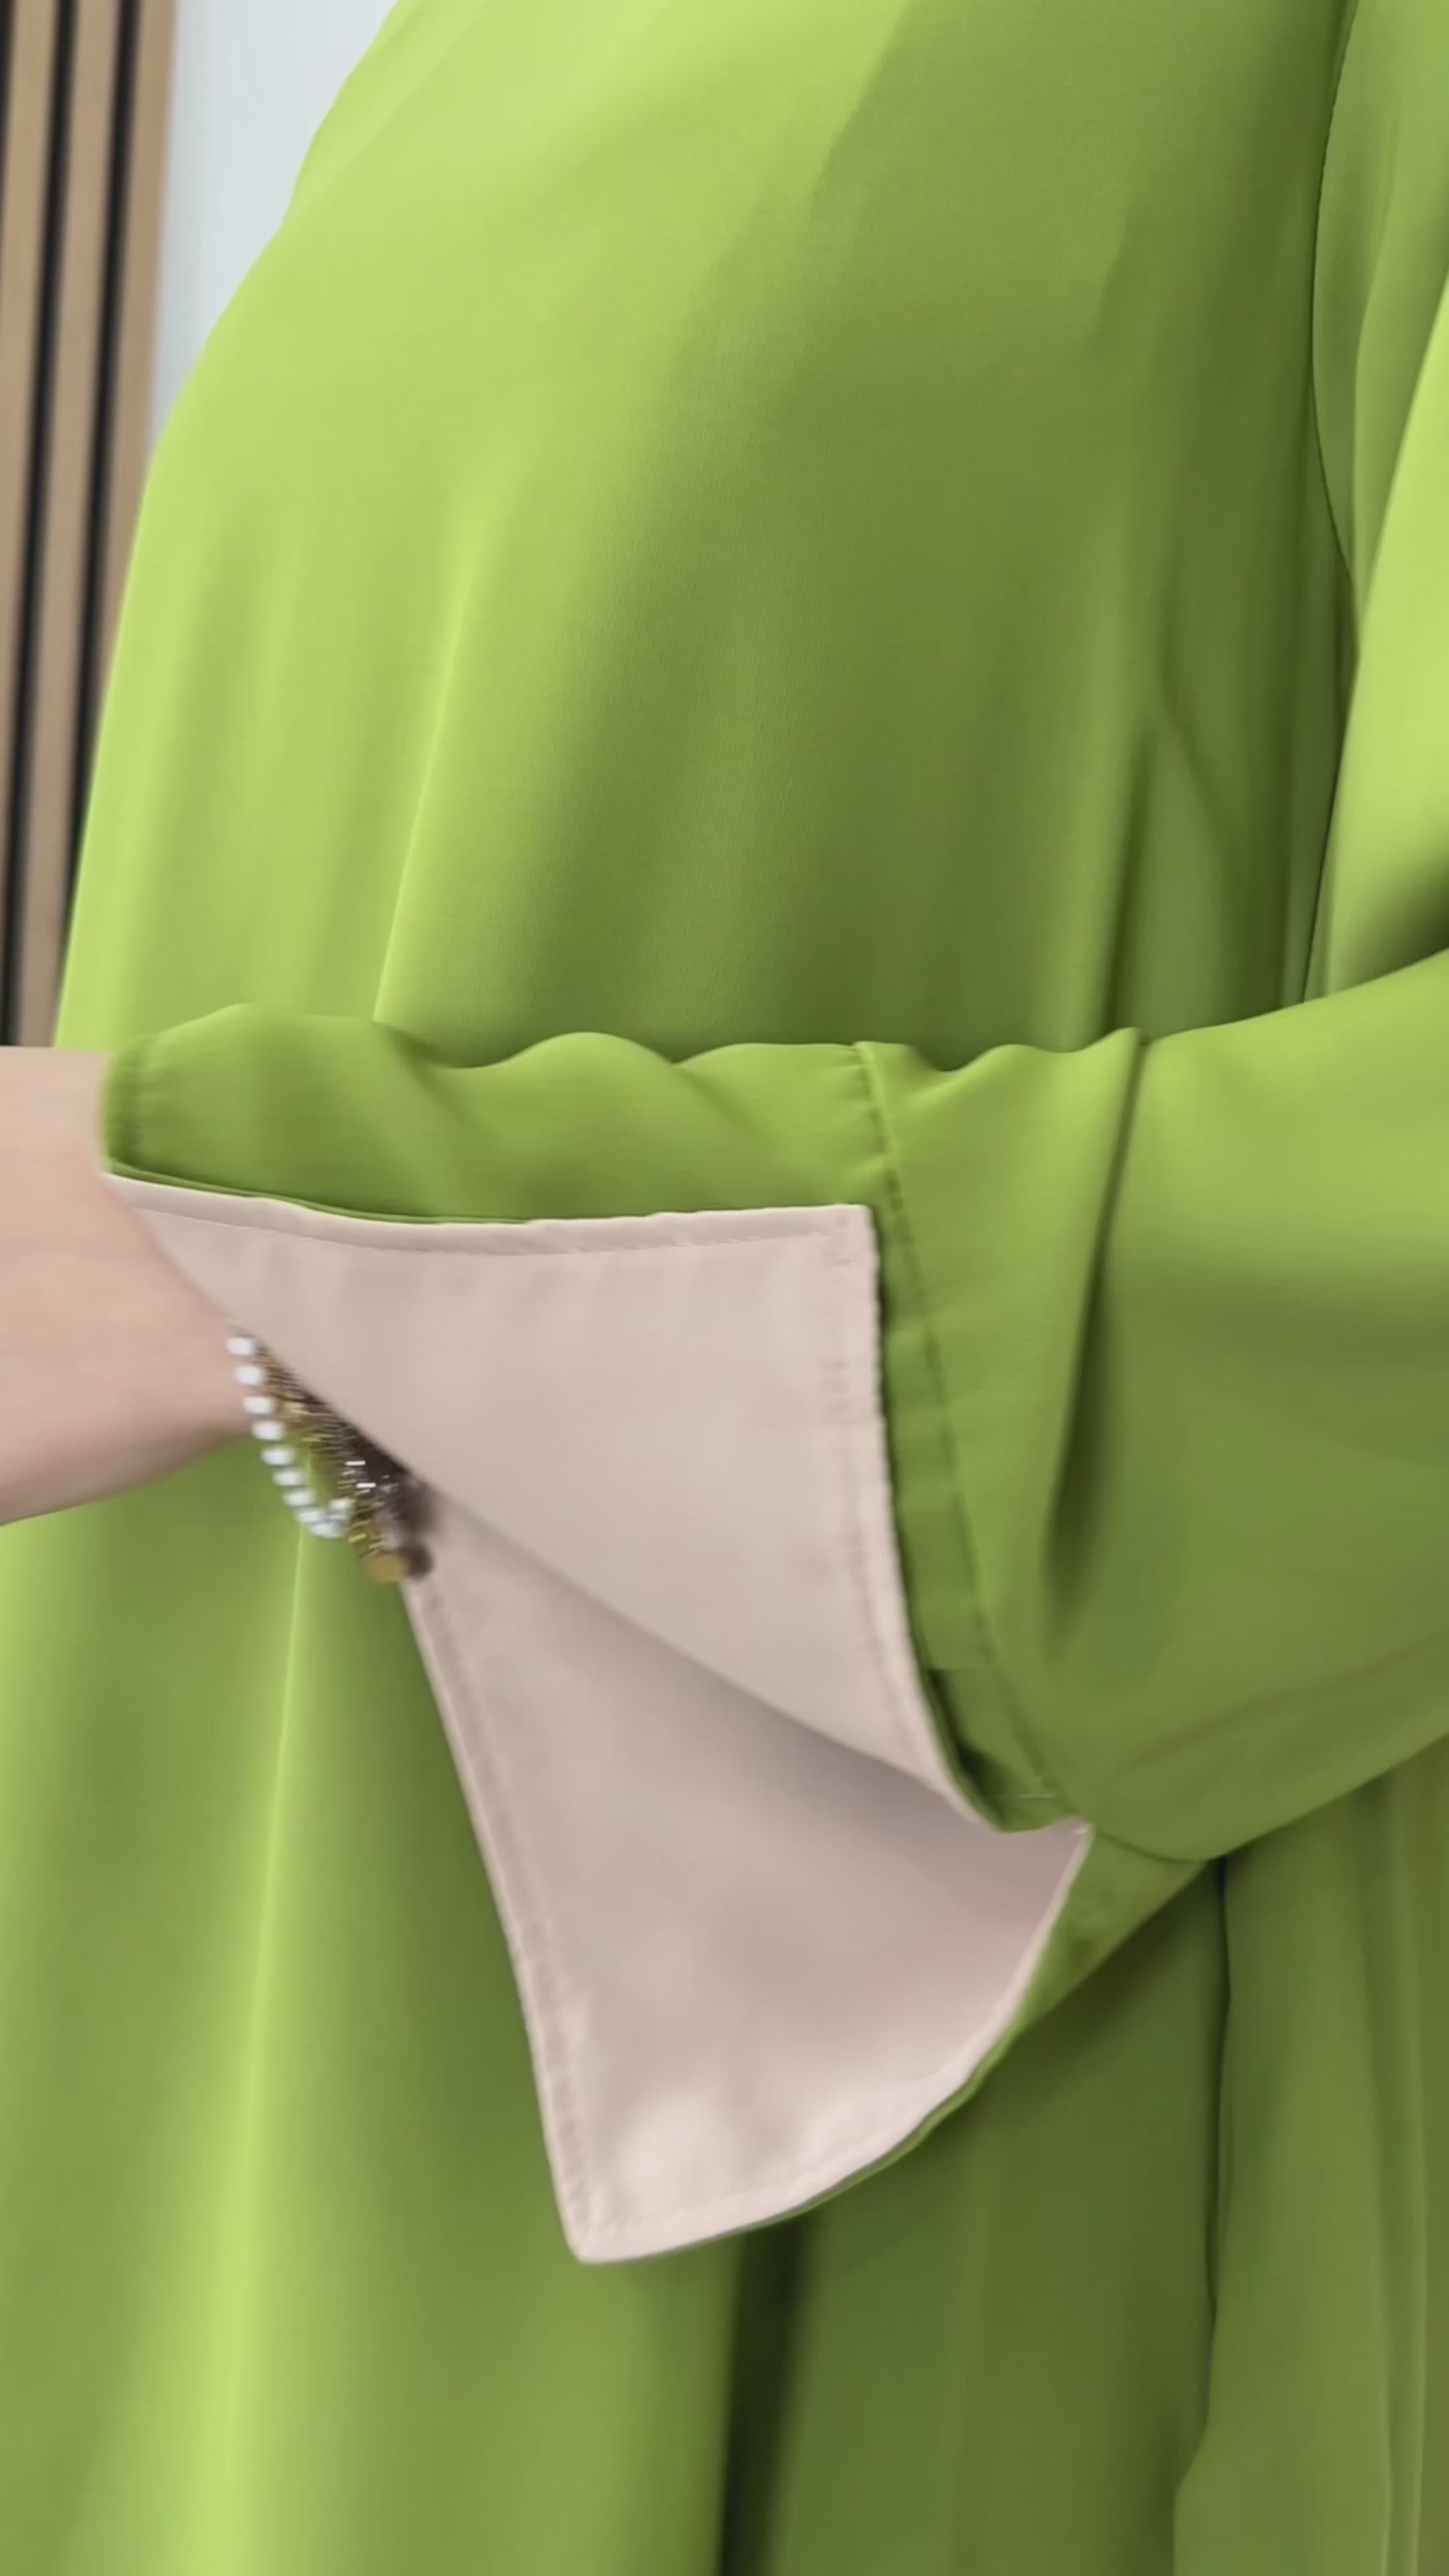 Abaya bicolour  verde avocado, maniche ripiegate,tasche, abito da Preghiera, donna musulmana, Hijab